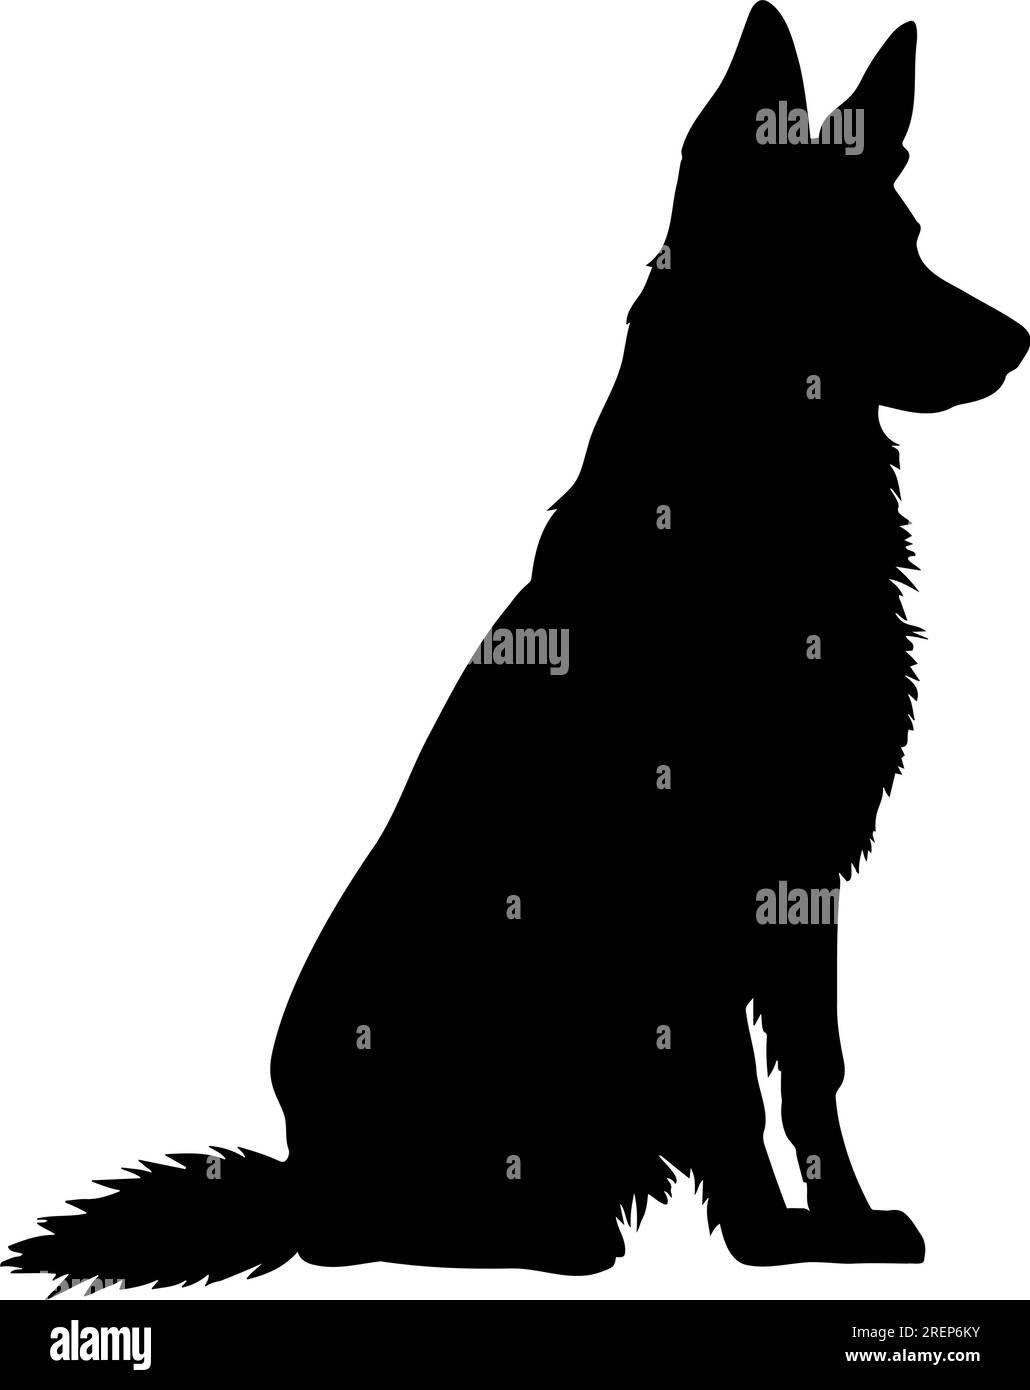 Die Silhouette des sitzenden schäferhundes. Vektordarstellung Stock Vektor